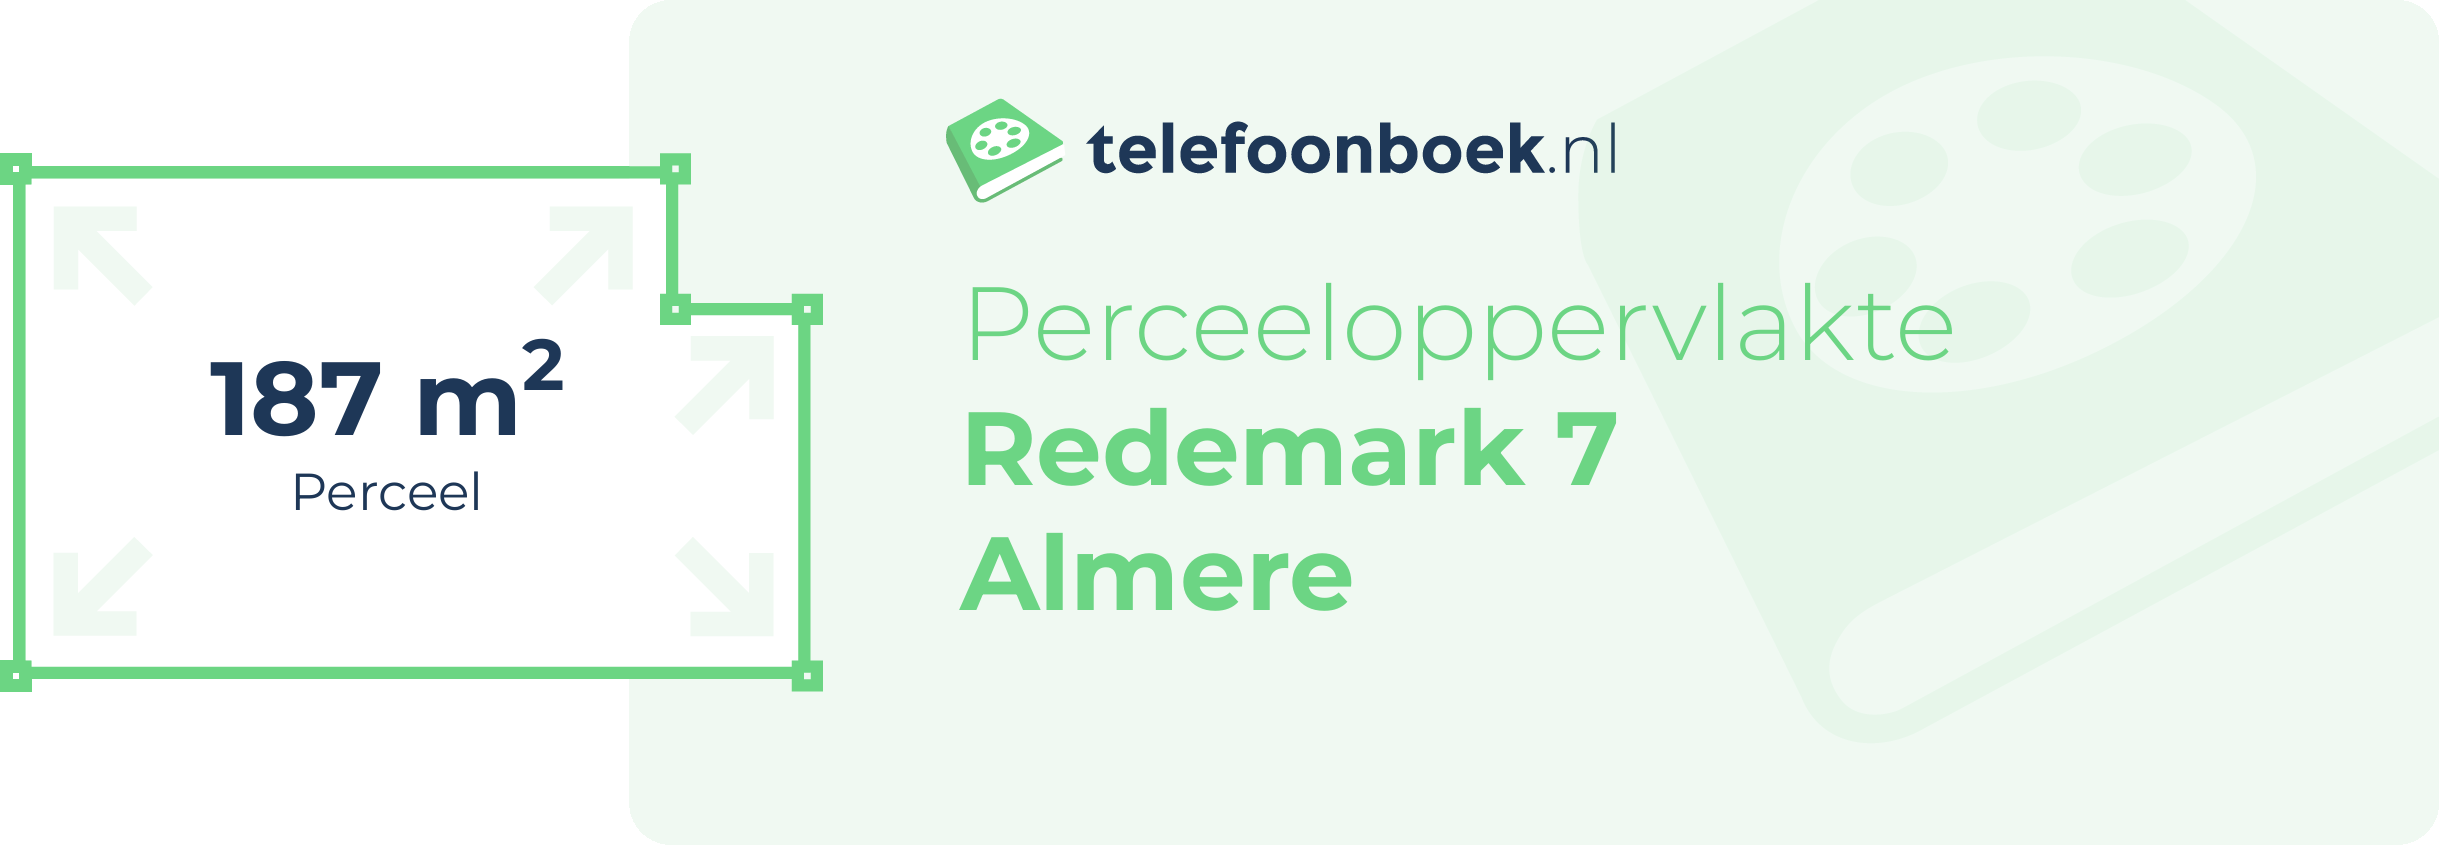 Perceeloppervlakte Redemark 7 Almere